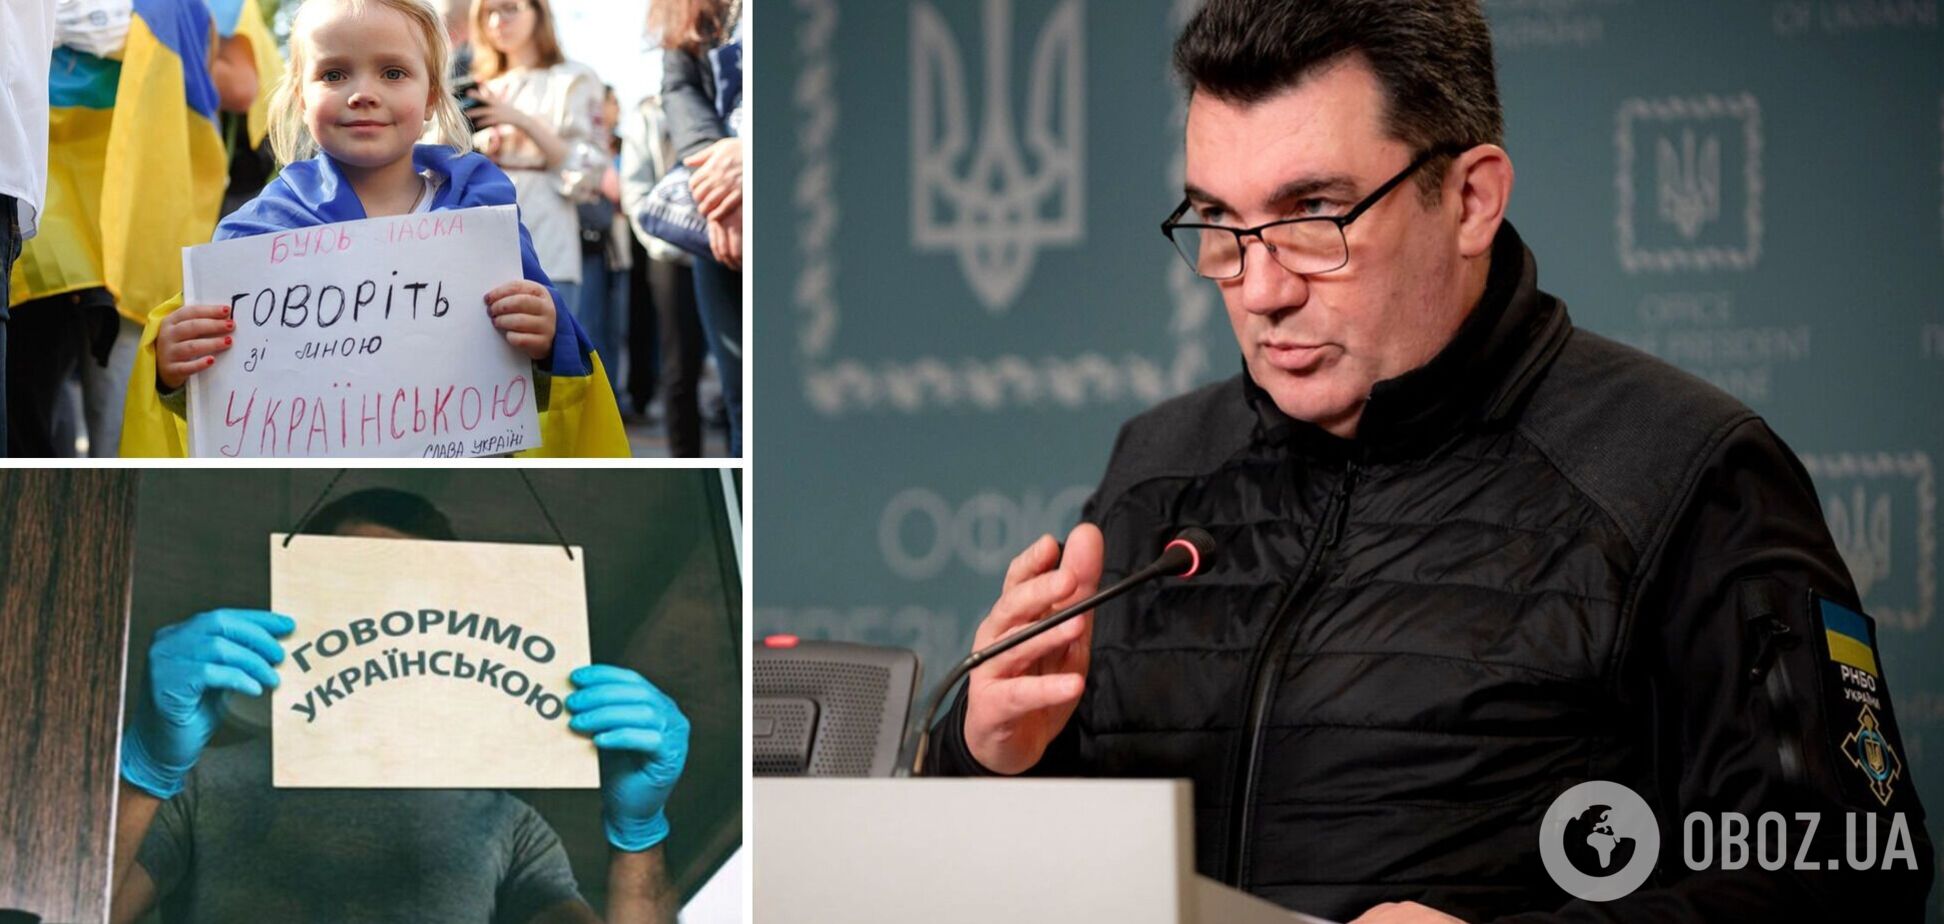 'Украинский язык является обязательным': Данилов призвал сферу услуг соблюдать законодательство